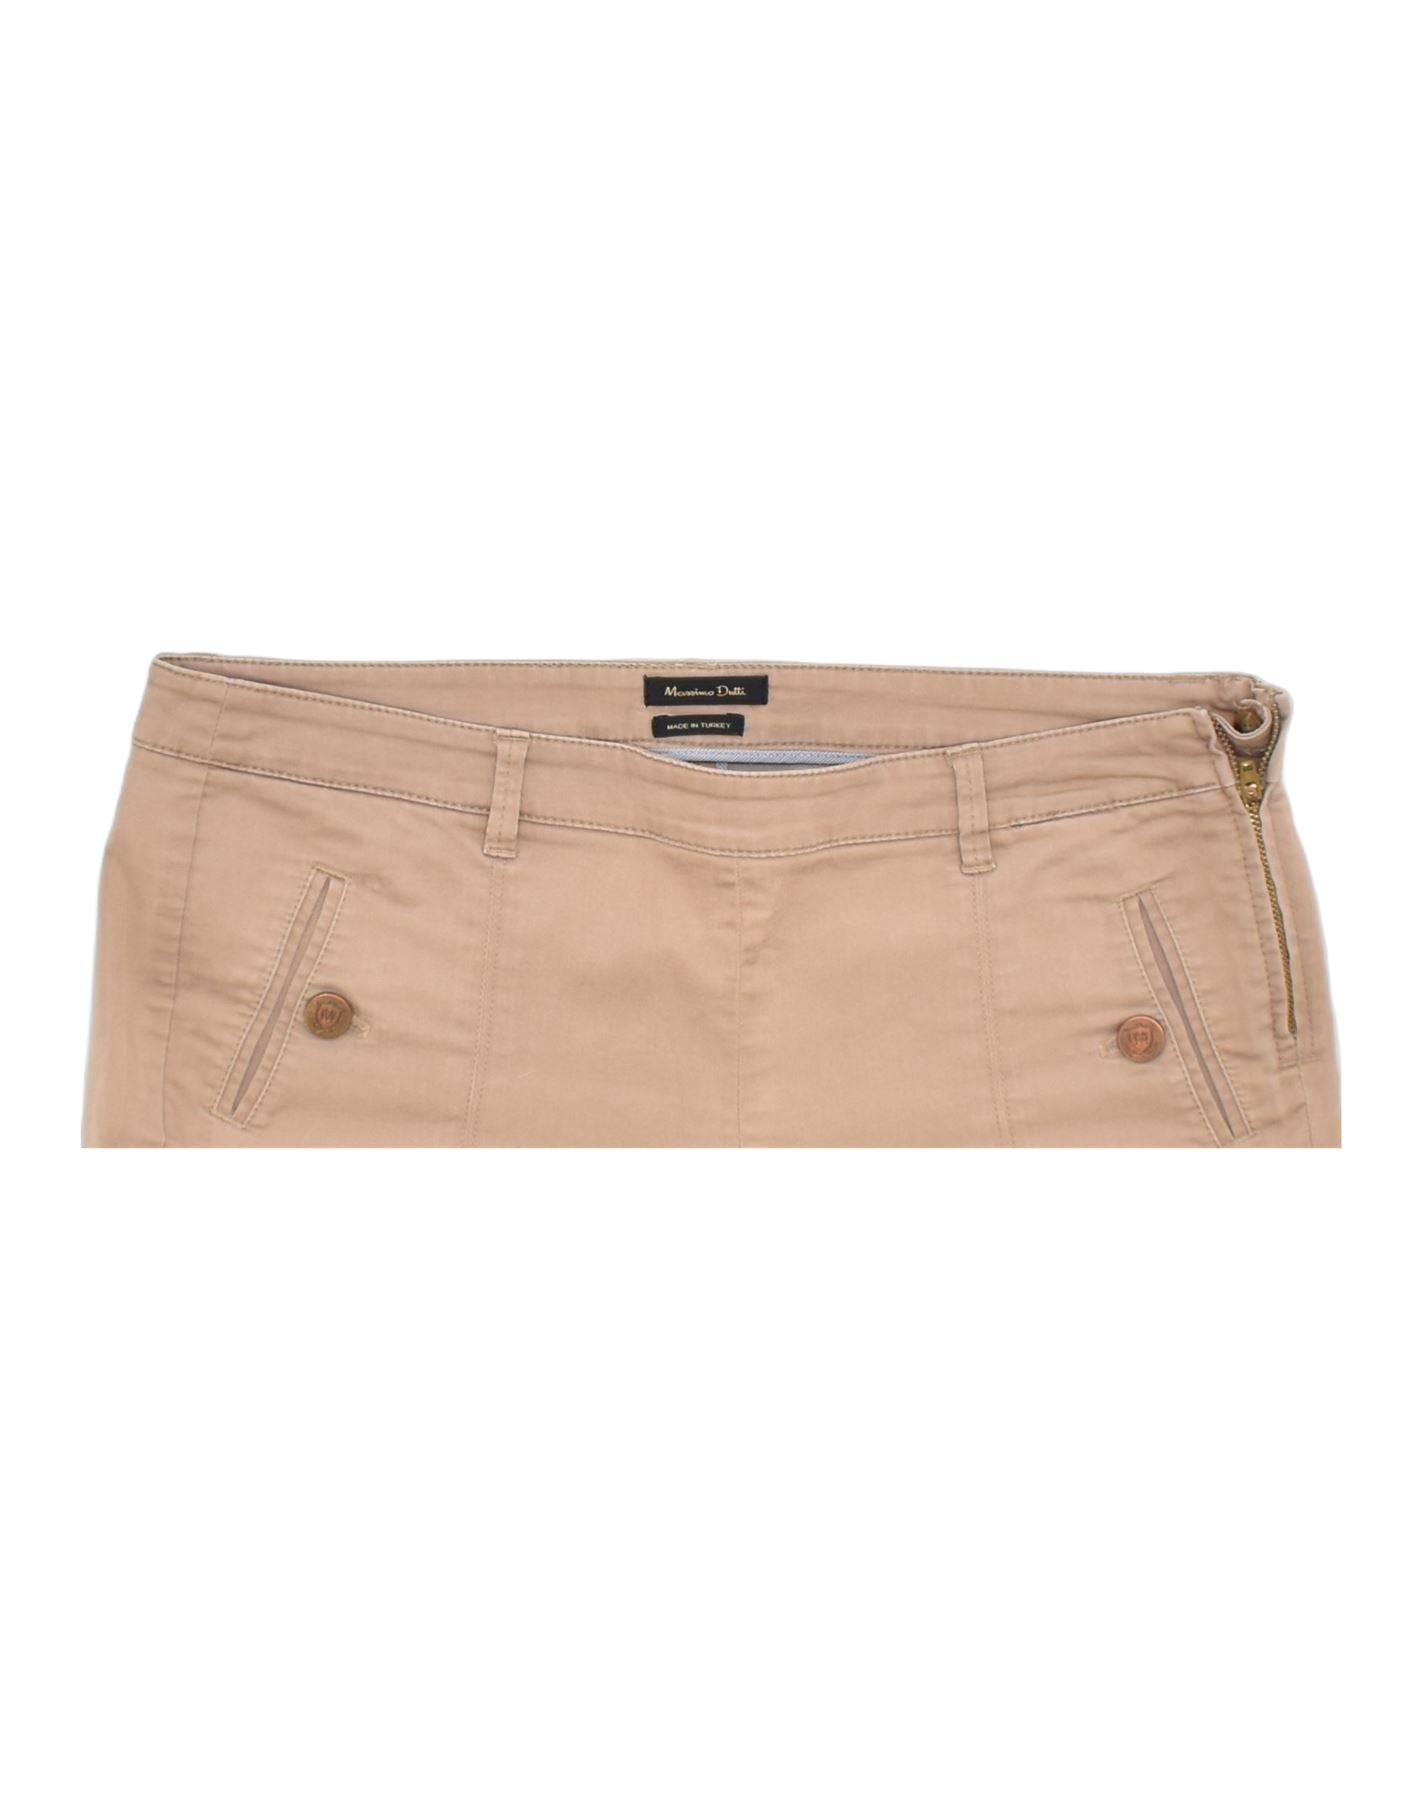 Sisley spodnie damskie kolor beżowy dopasowane medium waist | Answear.com